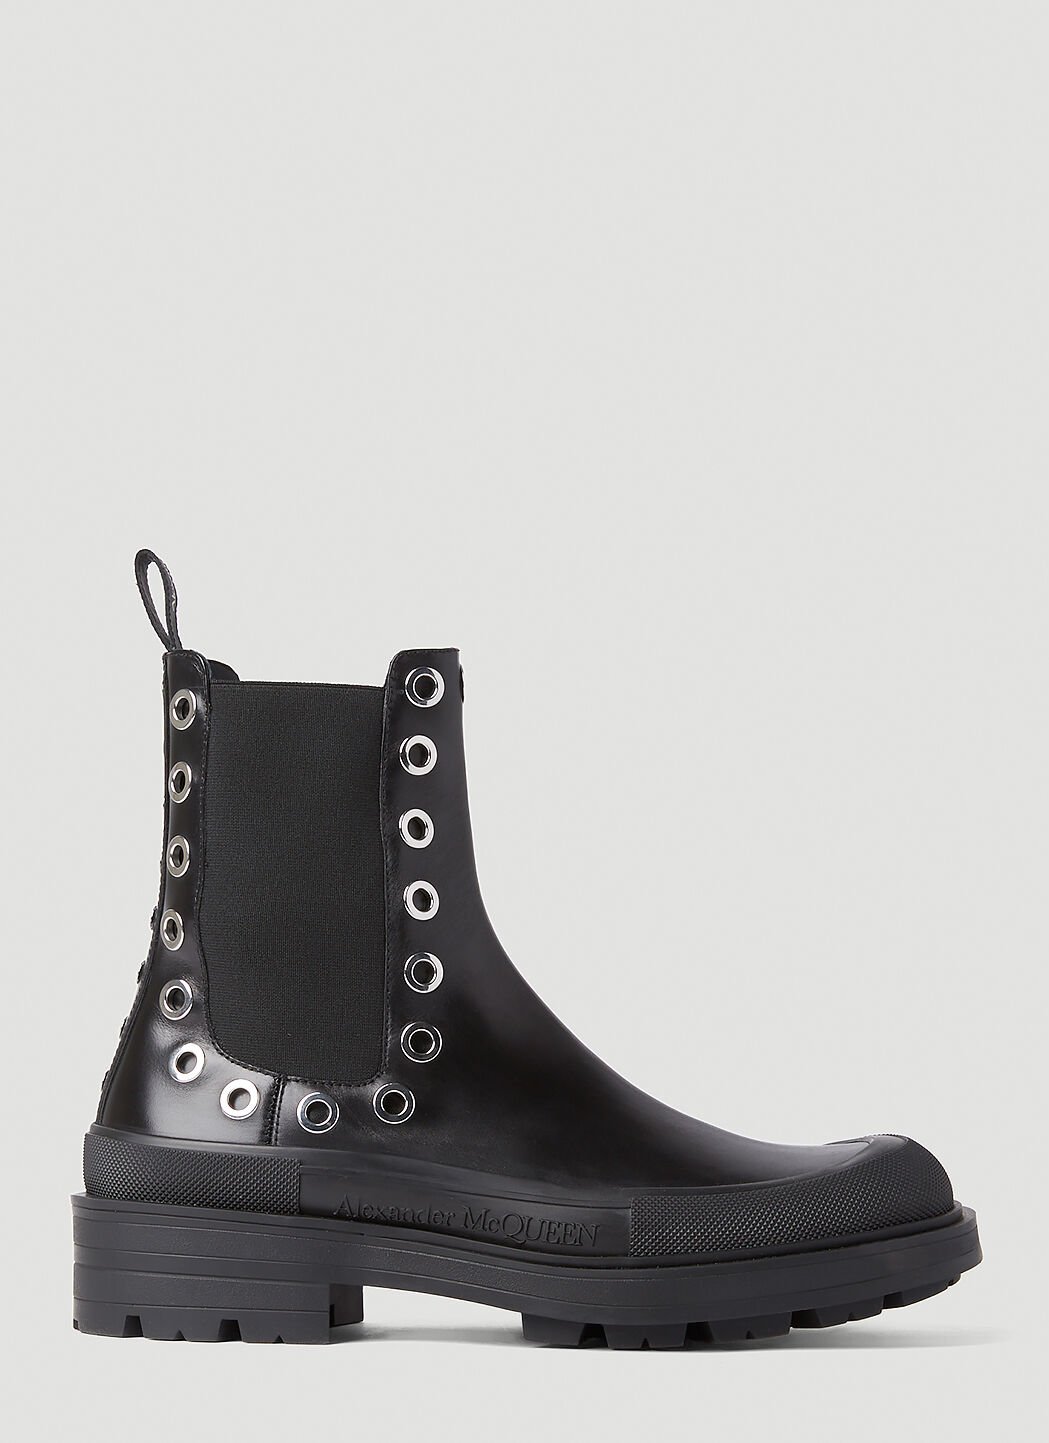 Alexander McQueen Eyelet Boots Black amq0152016